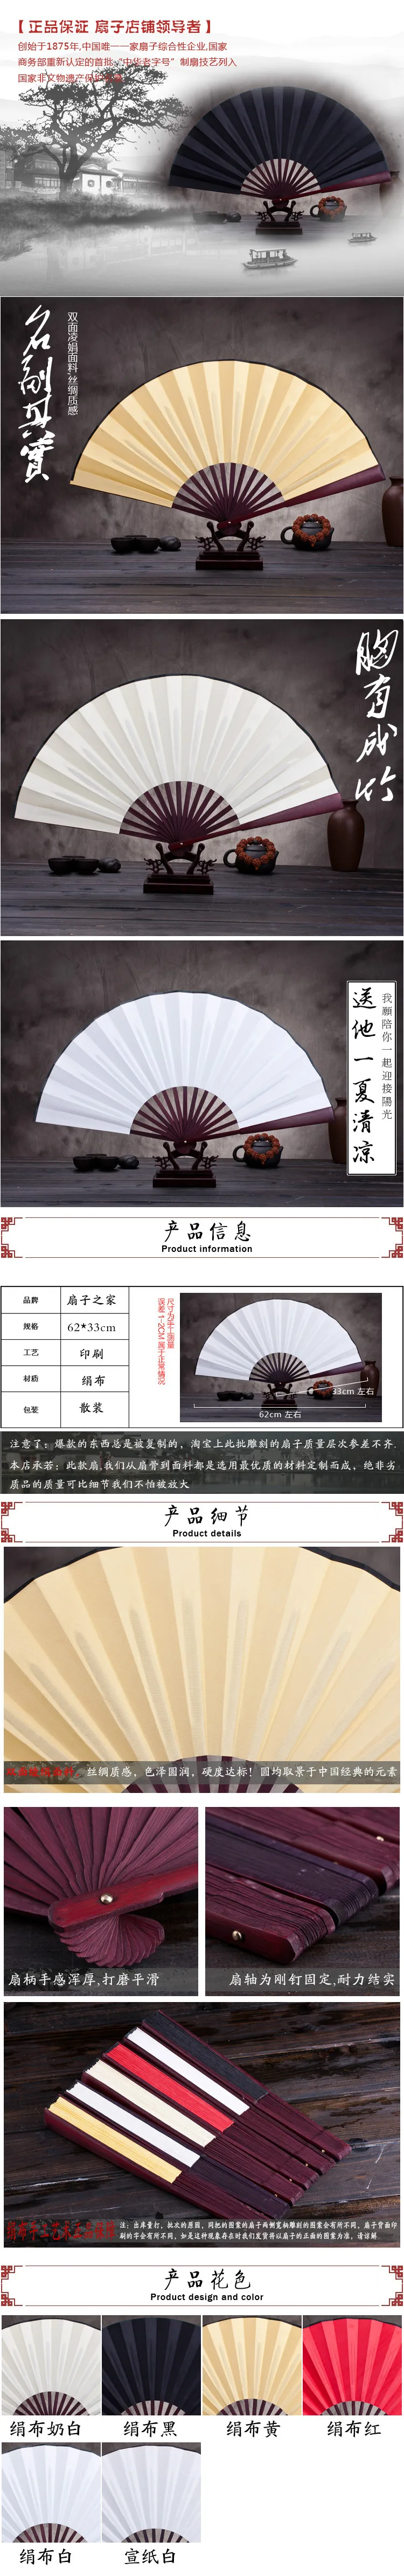 10 дюймов шелковая ткань пустой китайский складывающийся веер деревянный бамбук АНТИЧНОСТЬ складной веер для каллиграфии живопись